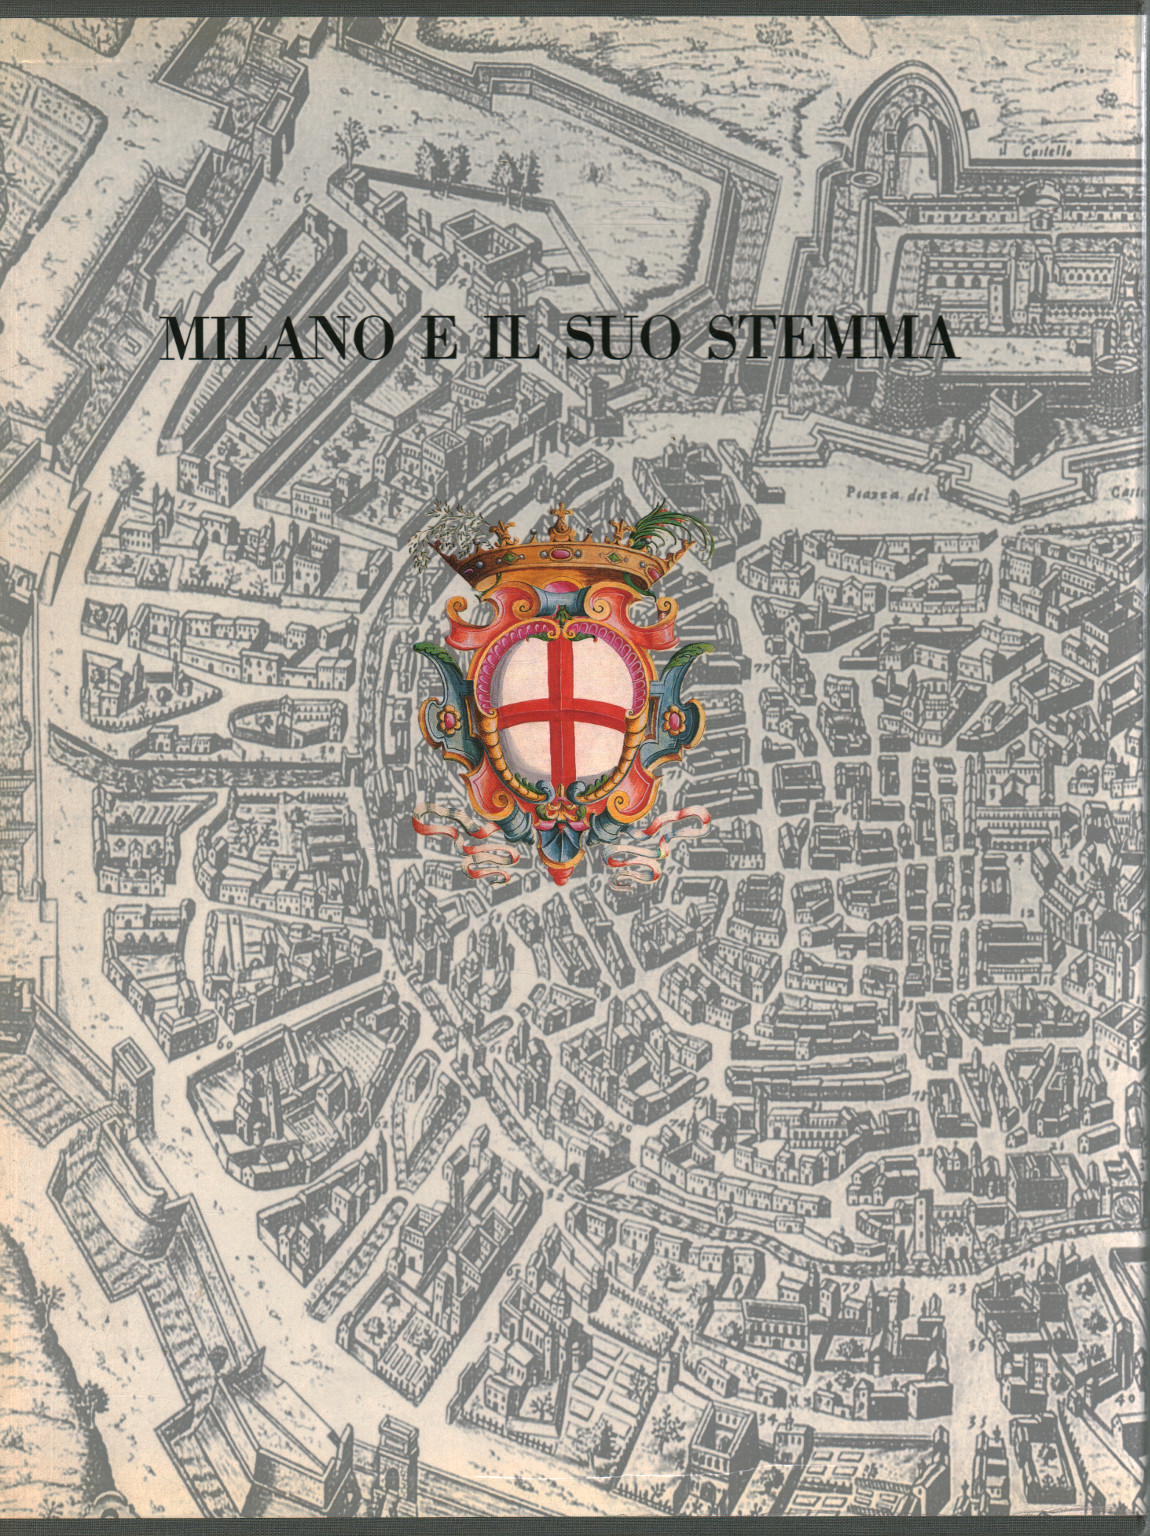 Milán y su escudo de armas, s.una.